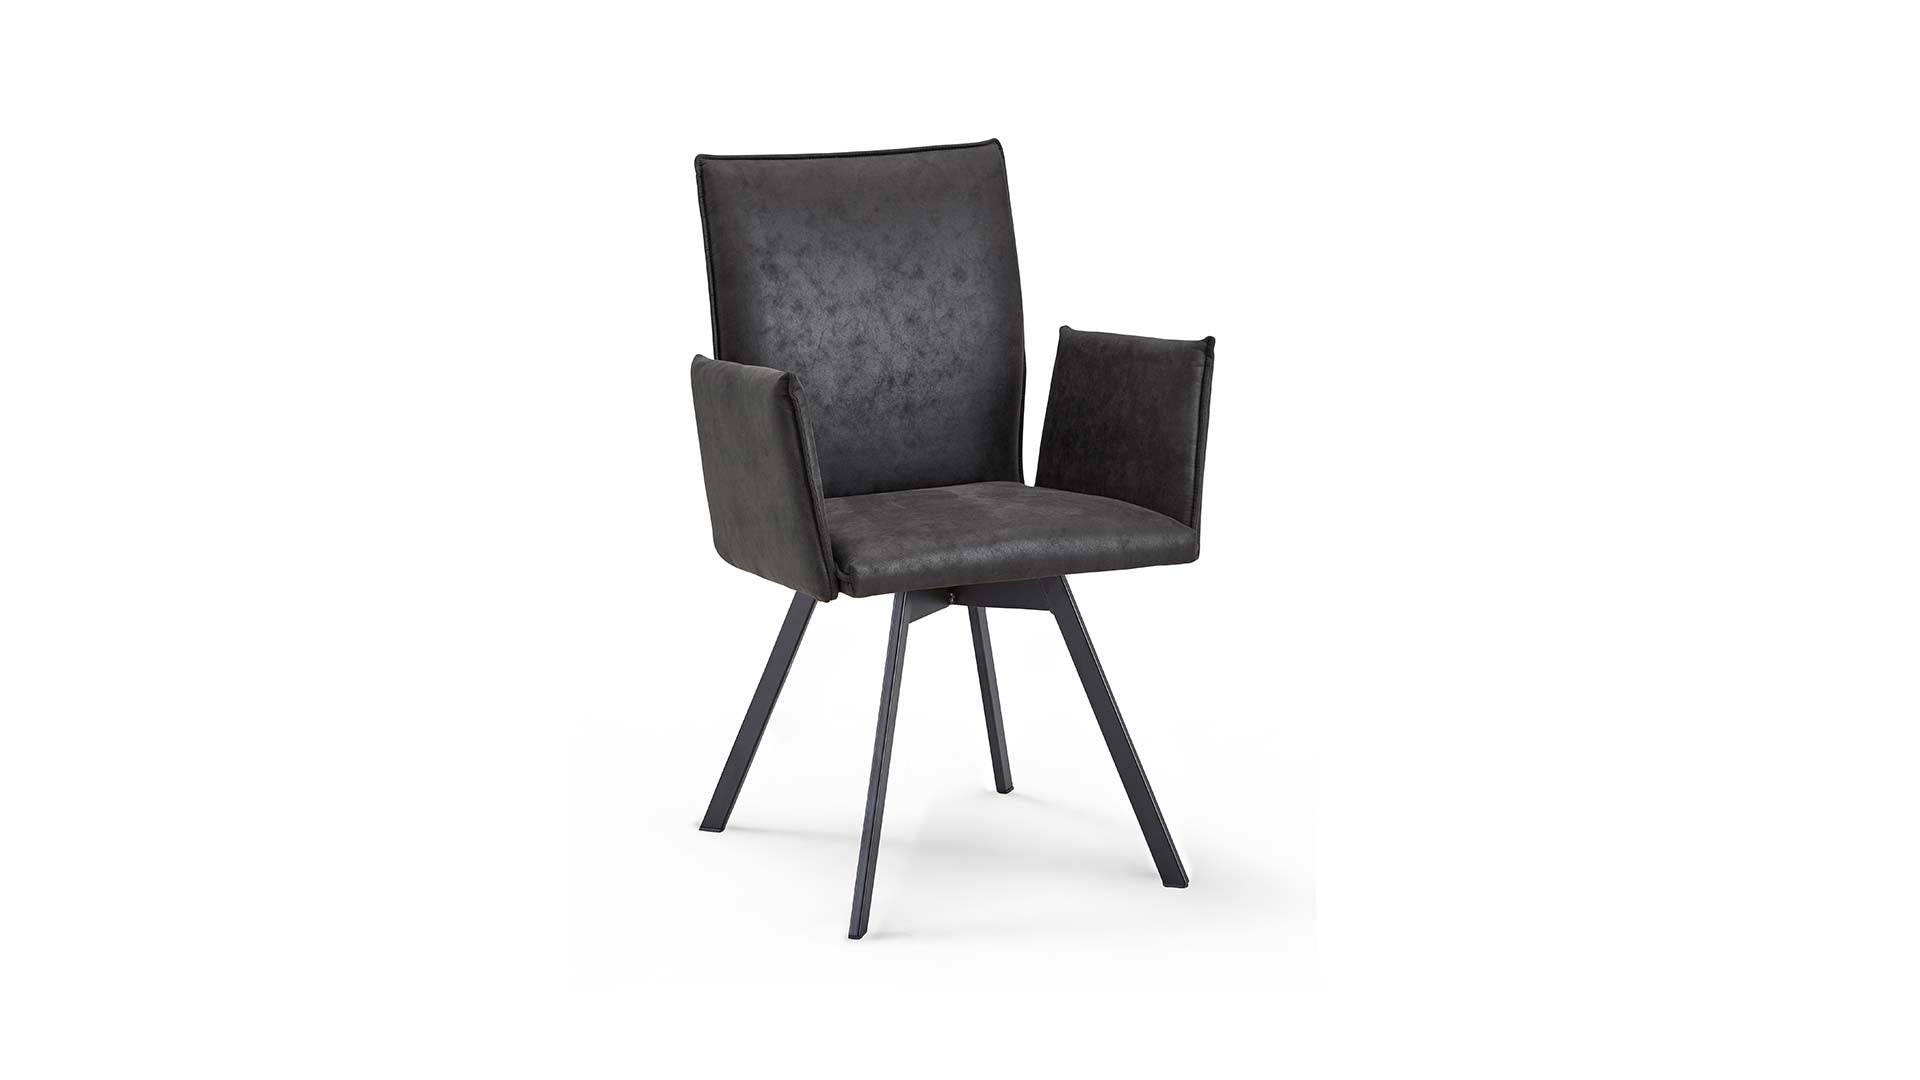 Grauer Schösswender Stuhl mit Metallfüßen.